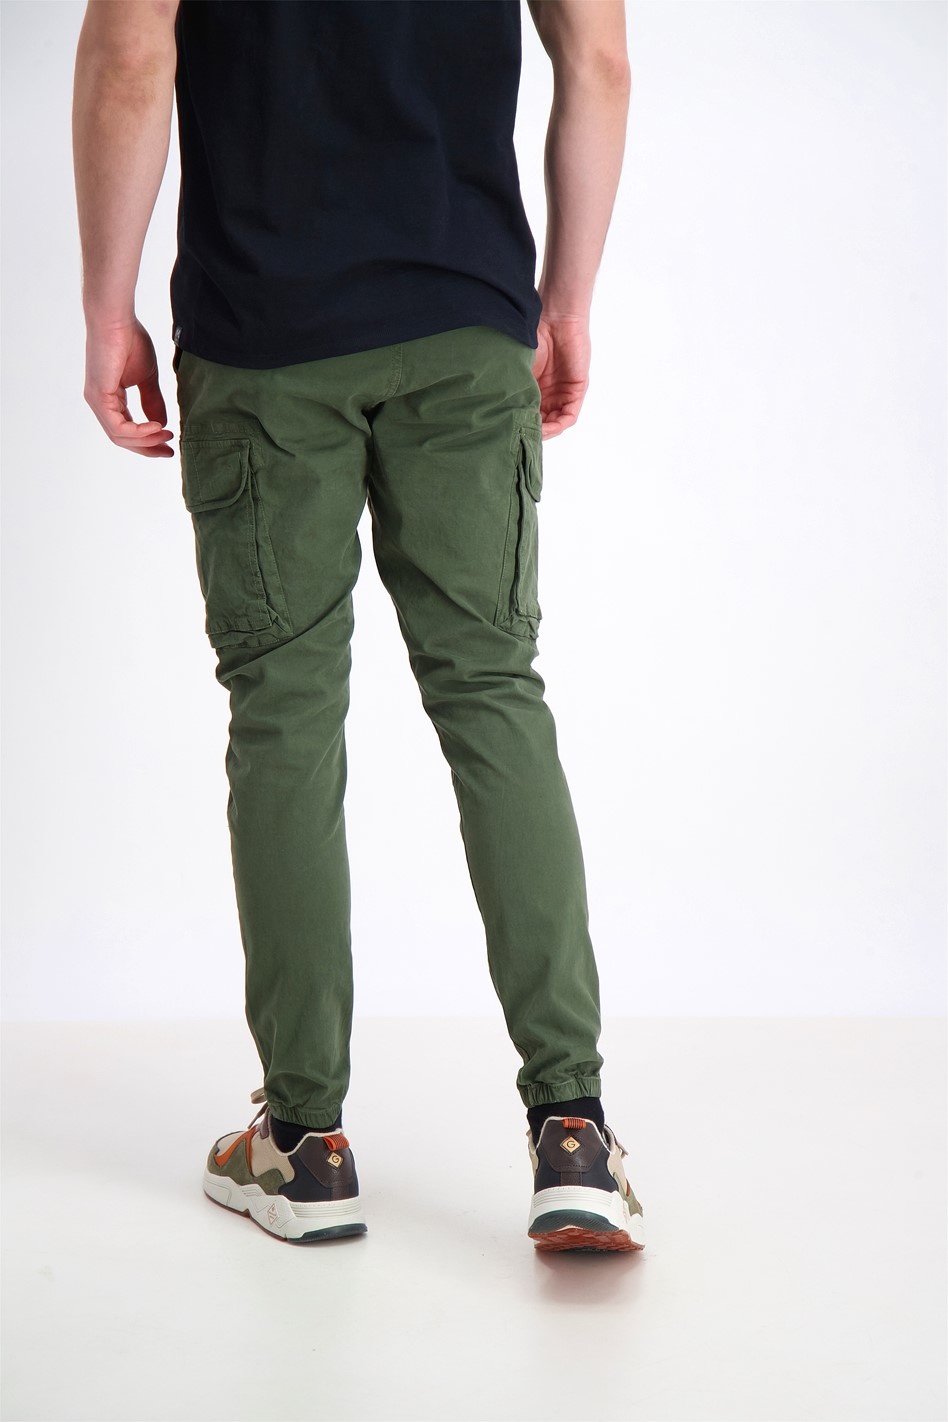 Cargo Pants For Men - Buy Latest Trendy Cargo Pants Online